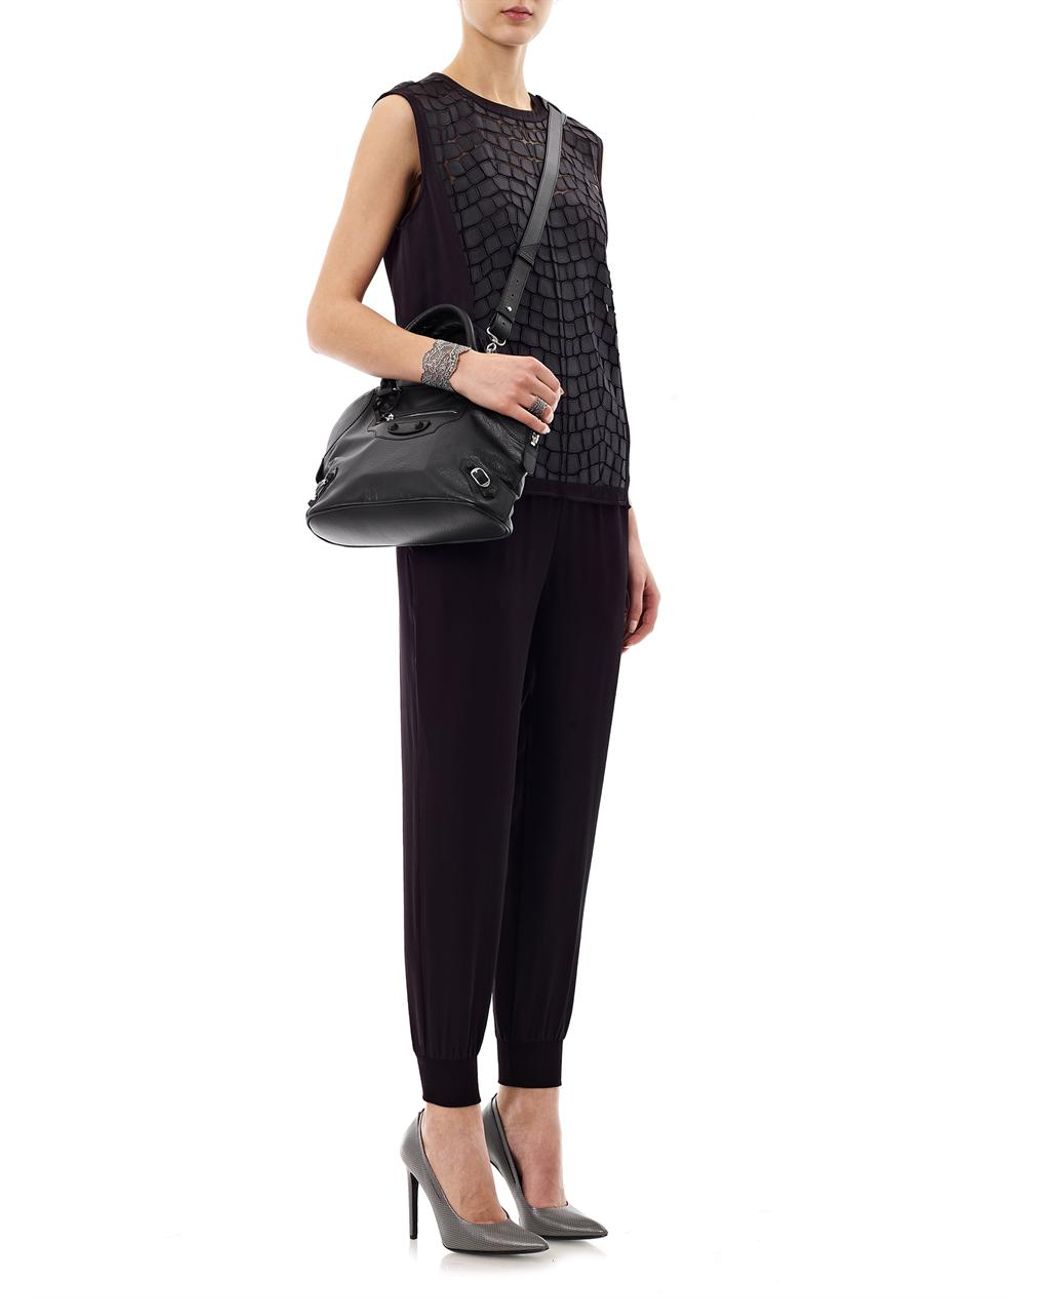 Balenciaga Classic Leather Bowling Bag in Black | Lyst